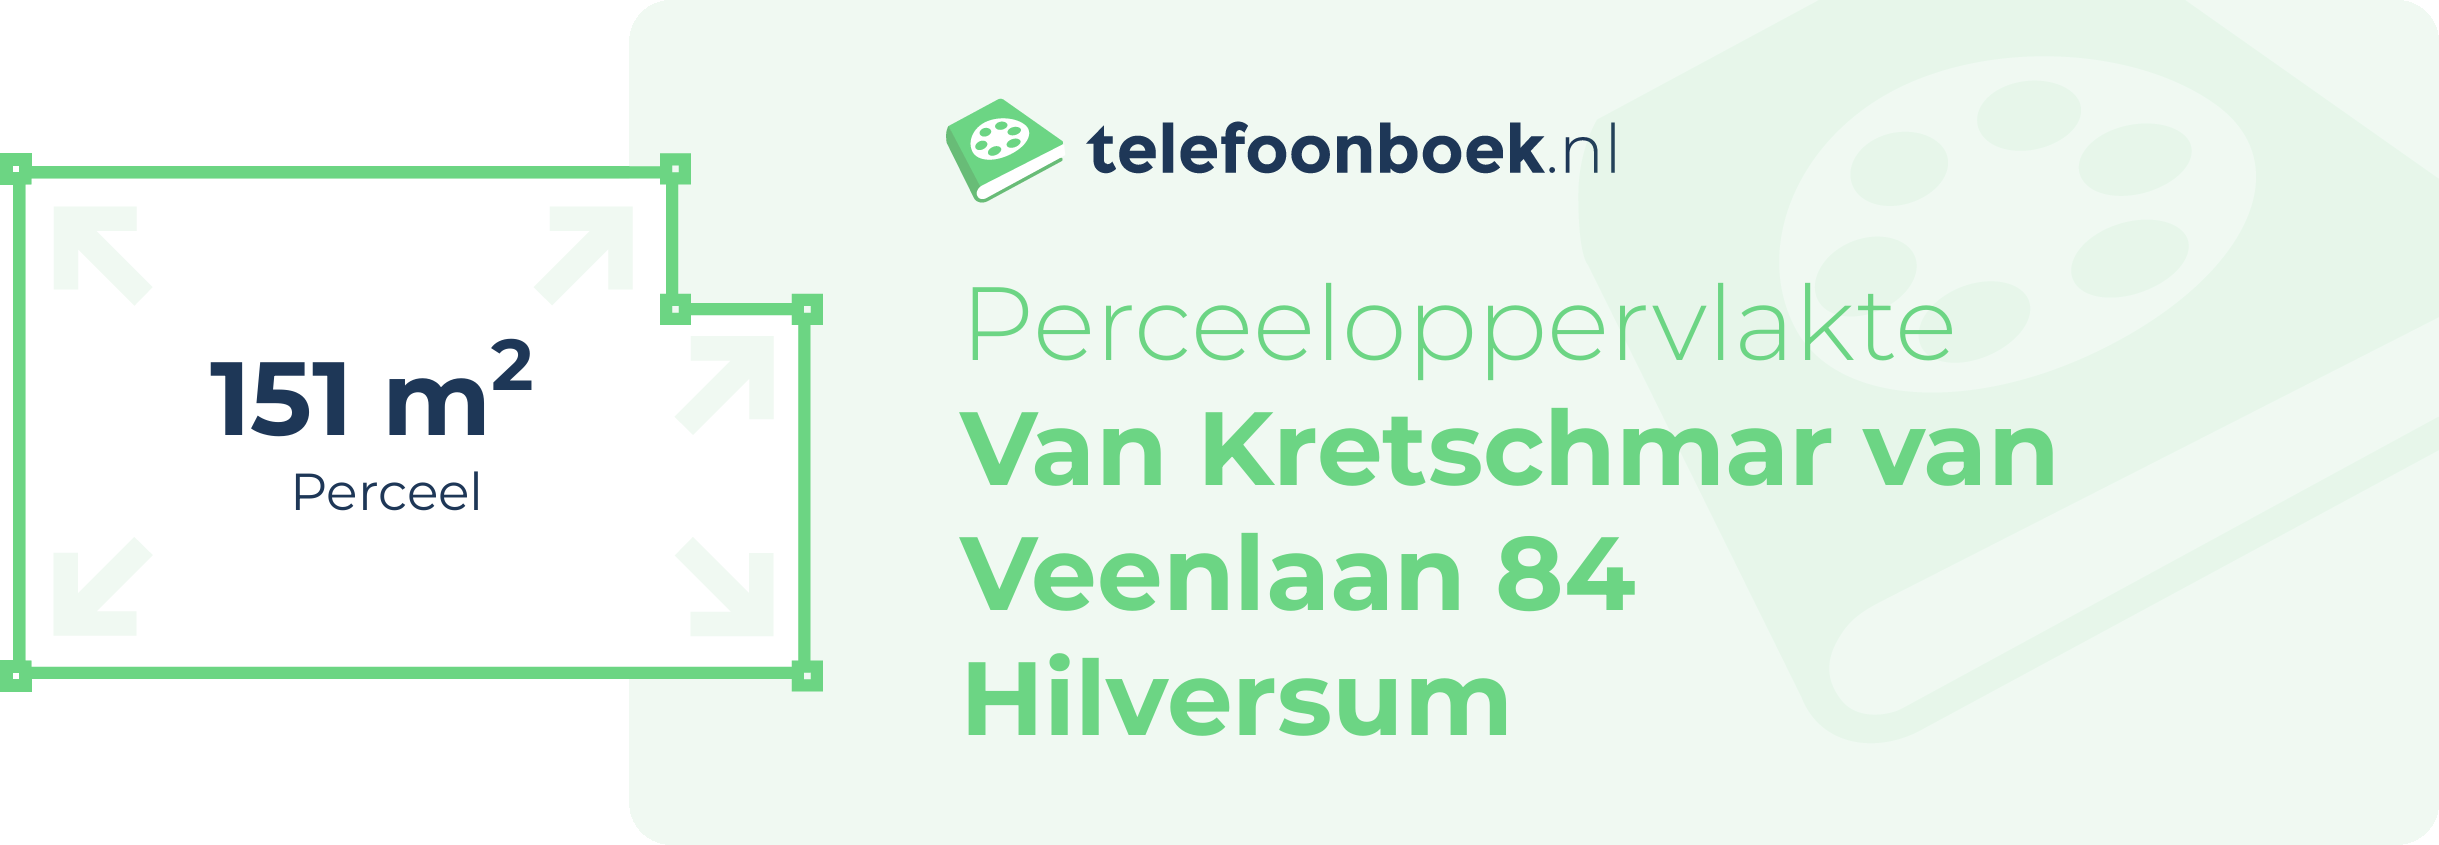 Perceeloppervlakte Van Kretschmar Van Veenlaan 84 Hilversum